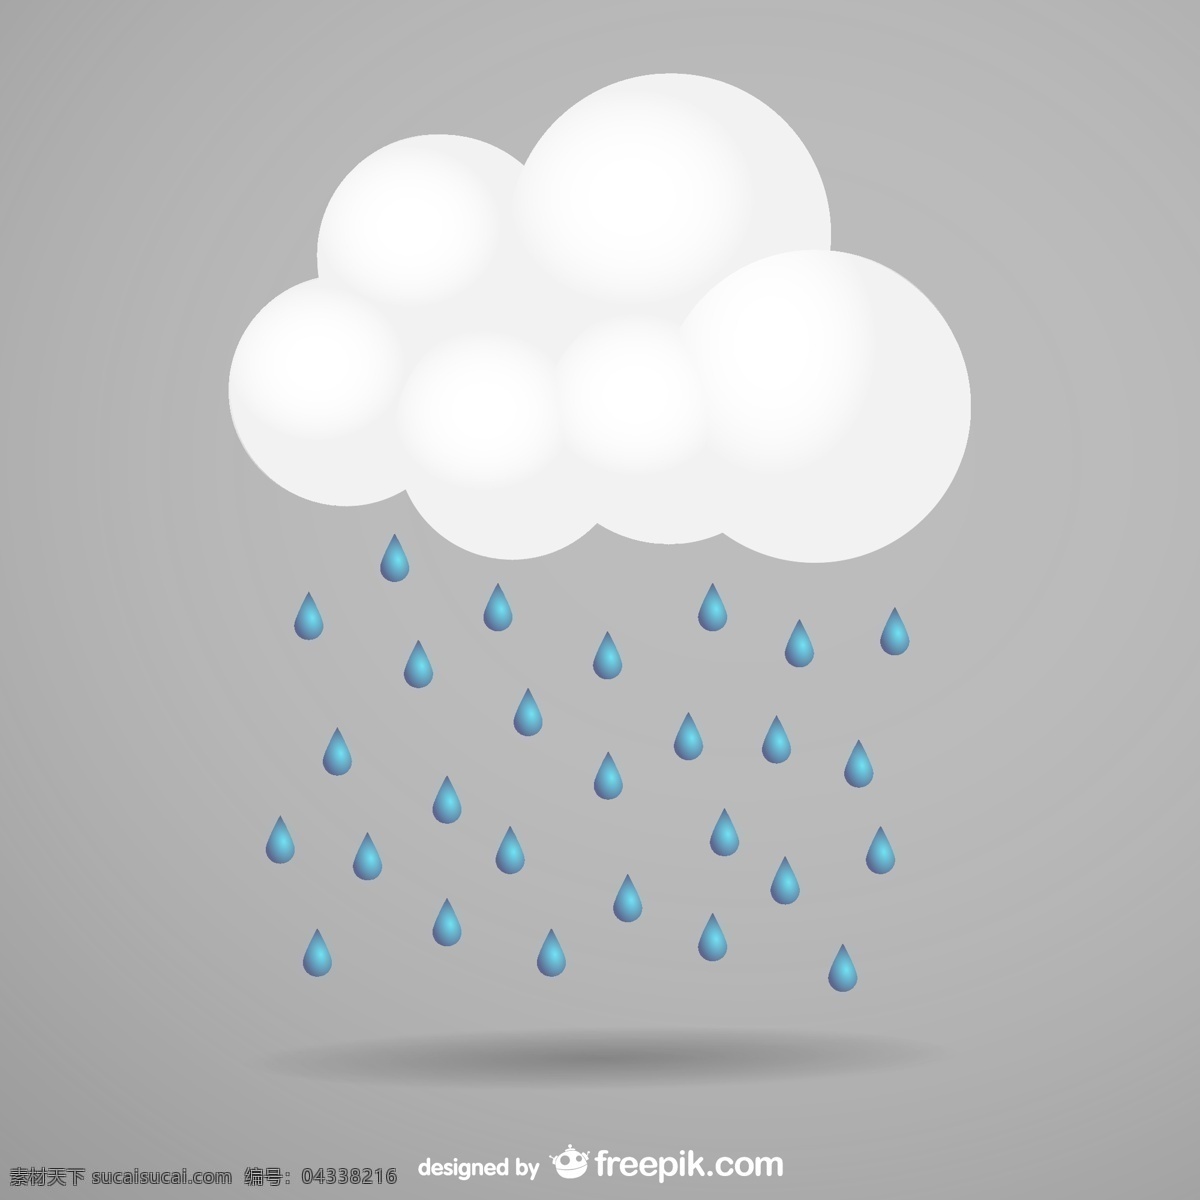 风暴云和雨 云 自然 天空 模板 秋季 图形 符号 雨 环境 插图 冷 元素 风暴 图像 季节 图形元素 雨季 灰色